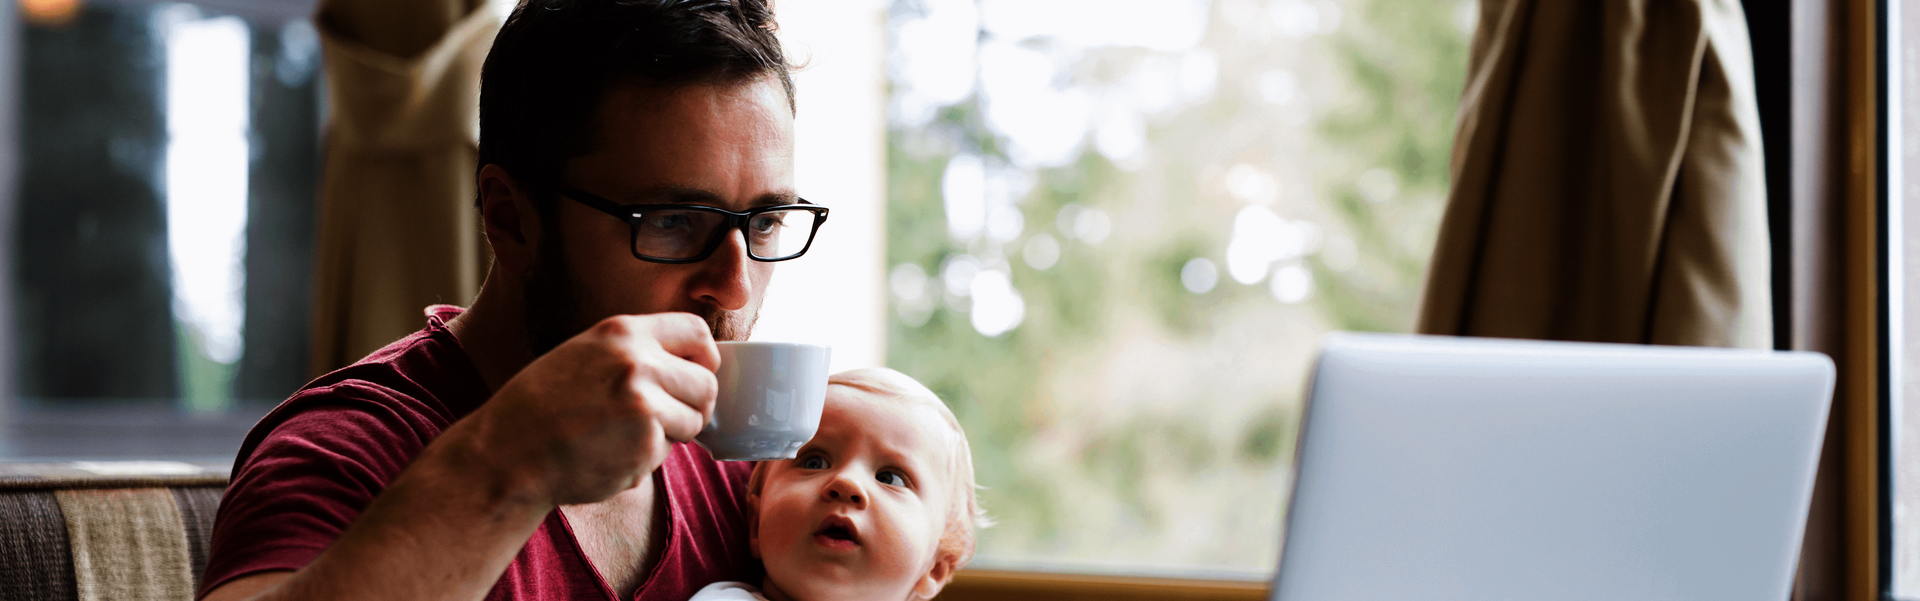 Ein Mann sitzt in einem Café, trinkt einen Kaffee, schaut auf einen Laptop und hält sein Baby fest.